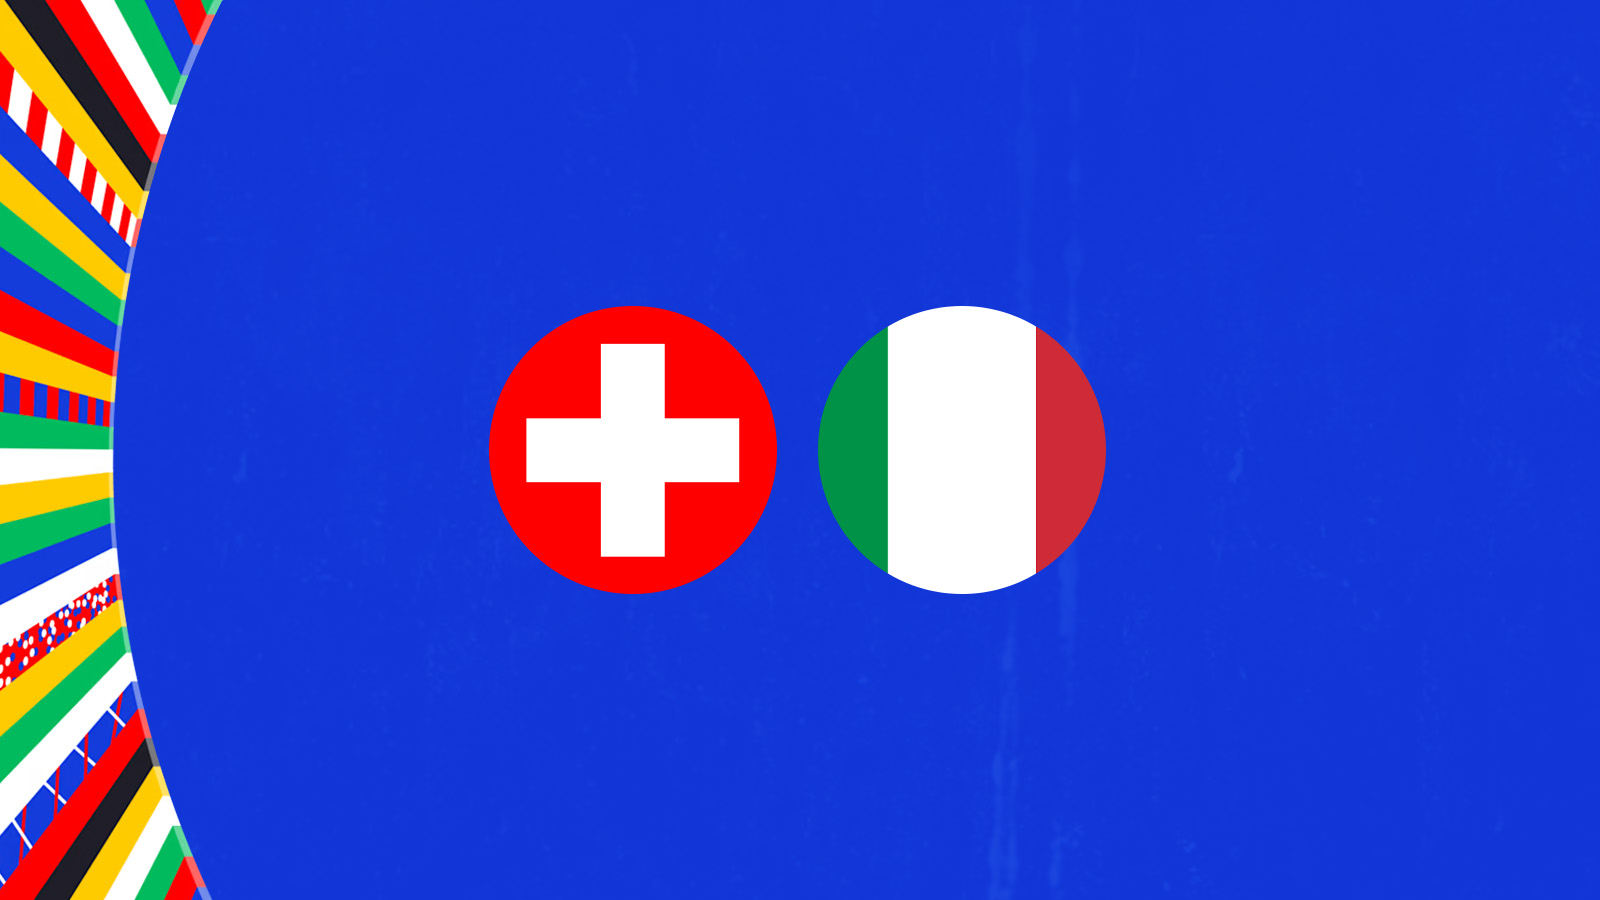 Ελβετία - Ιταλία